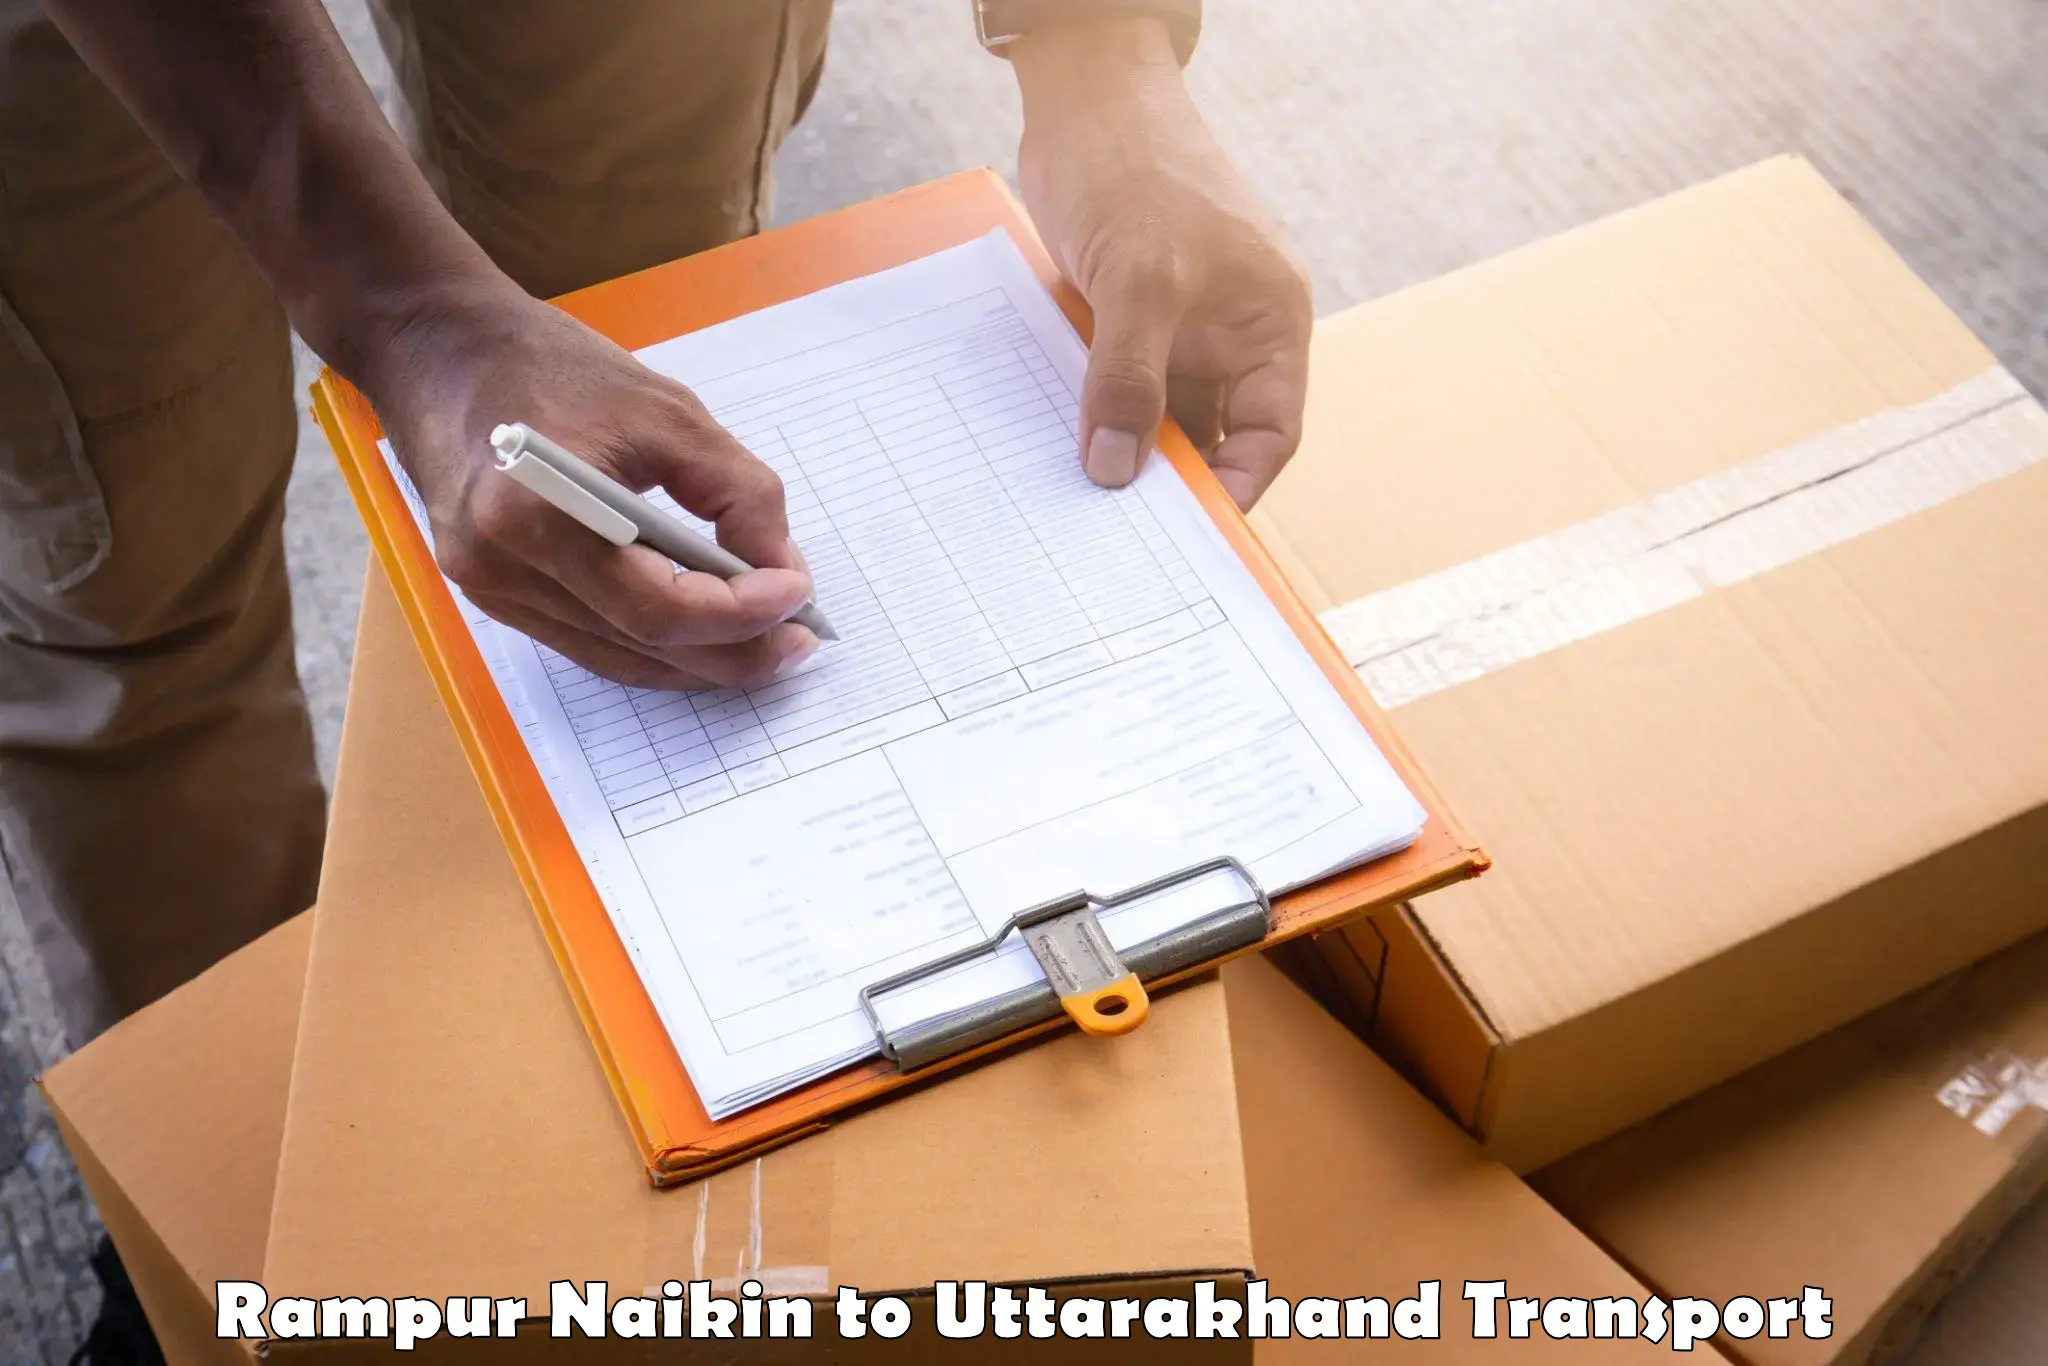 Delivery service Rampur Naikin to Sitarganj